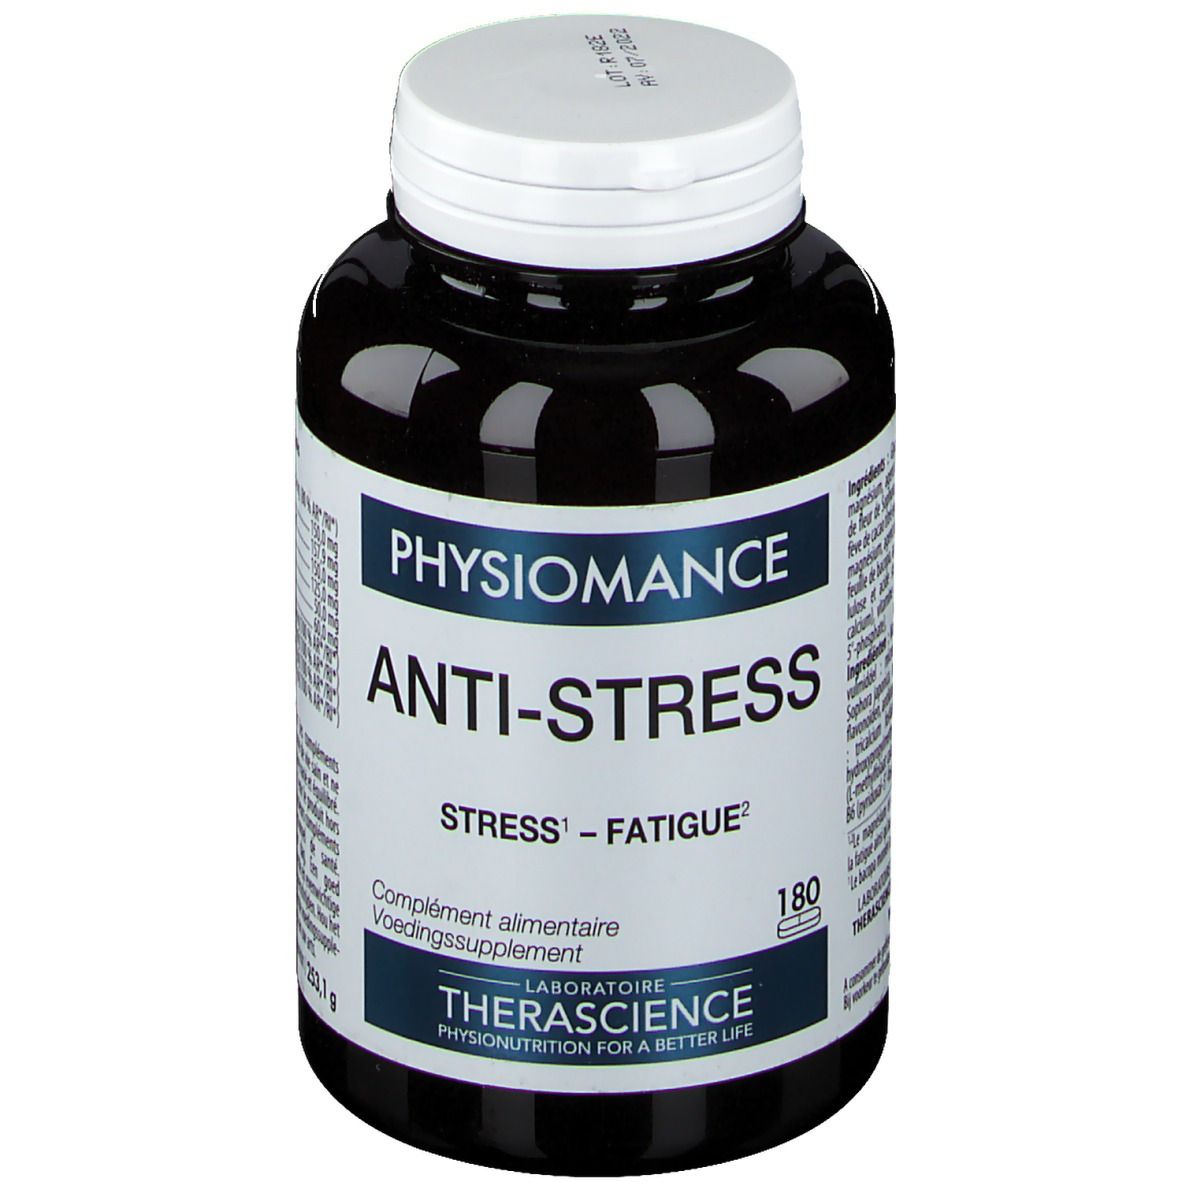 Image of PHYSIOMANCE Anti-Stress